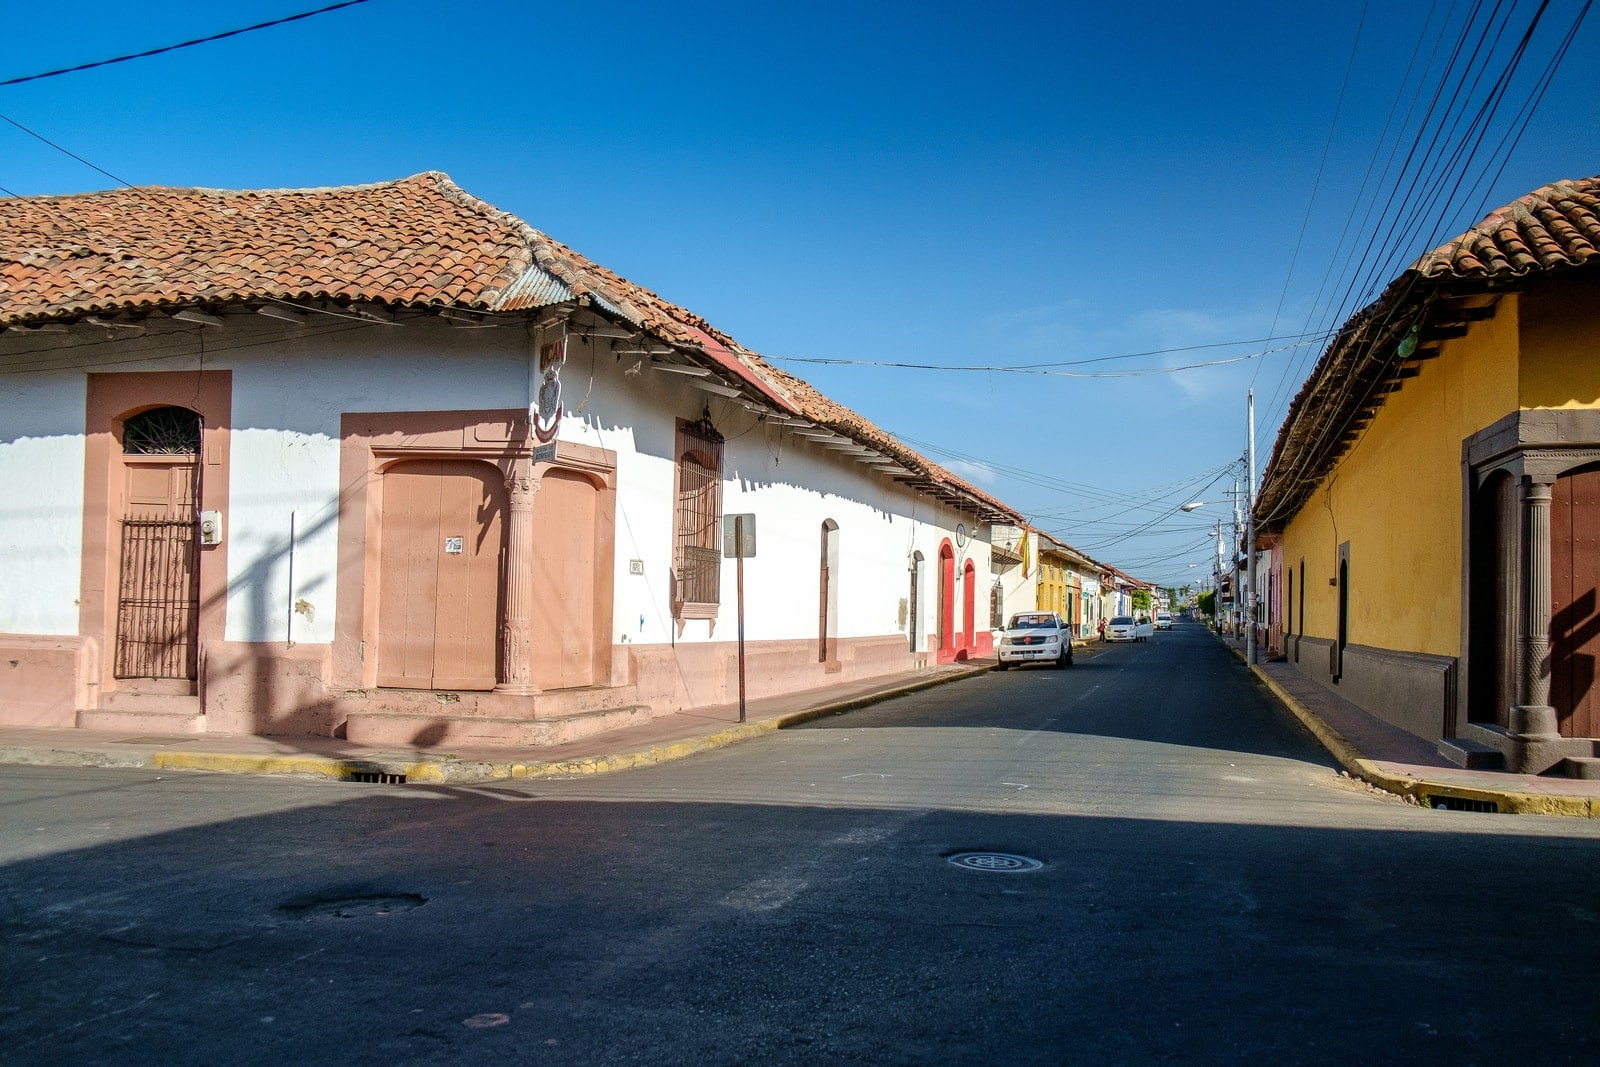 Parada de Bus, León, León, Nicaragua